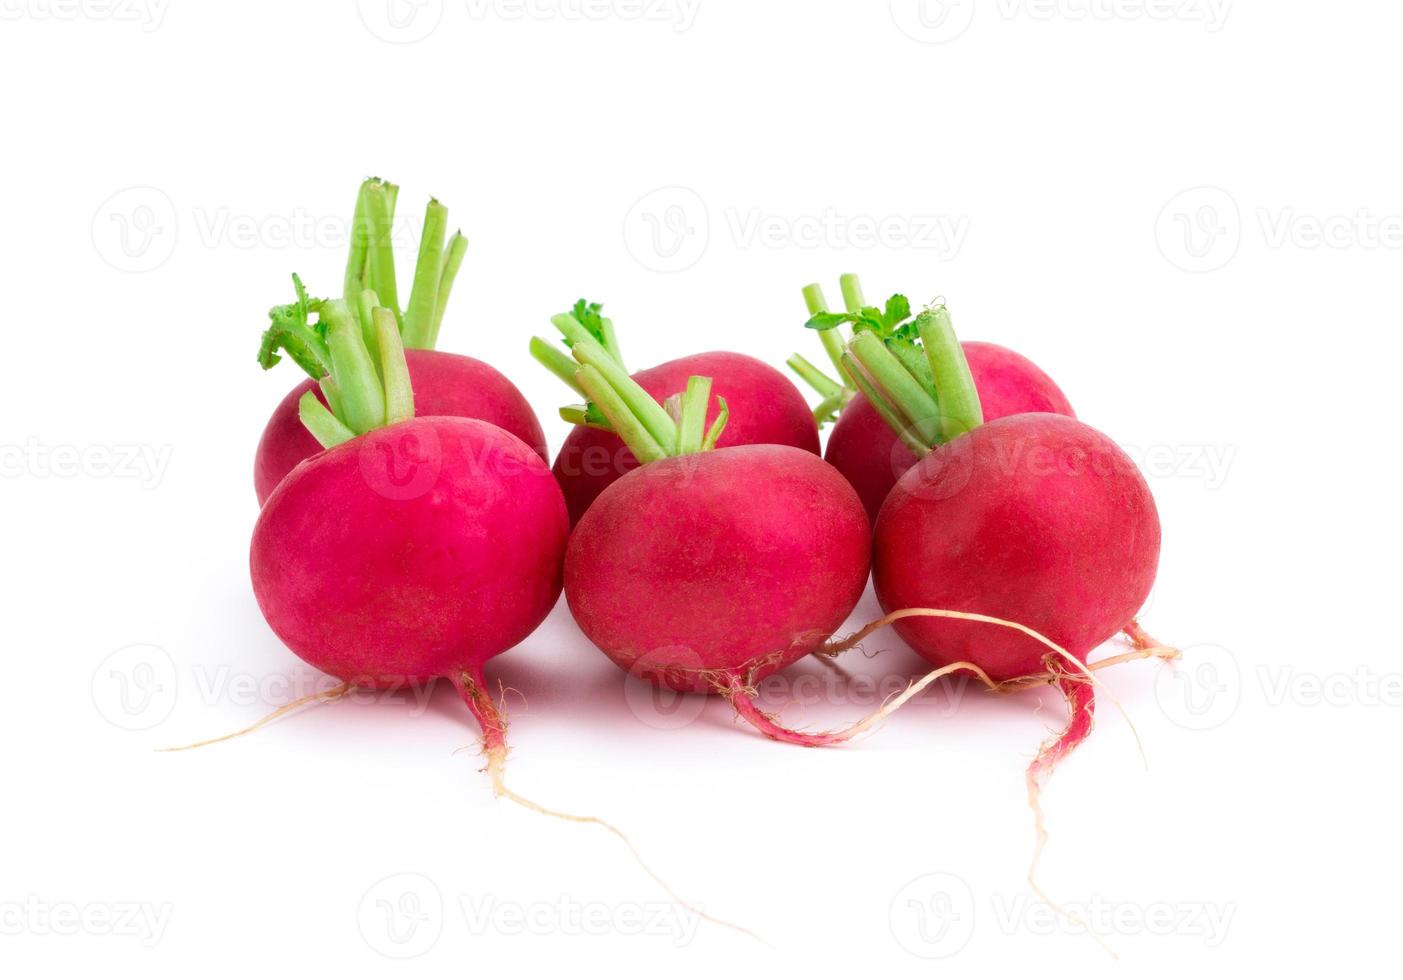 radis rouge ou violet, mélange de salade bio aliments naturels sains isolés sur fond blanc photo